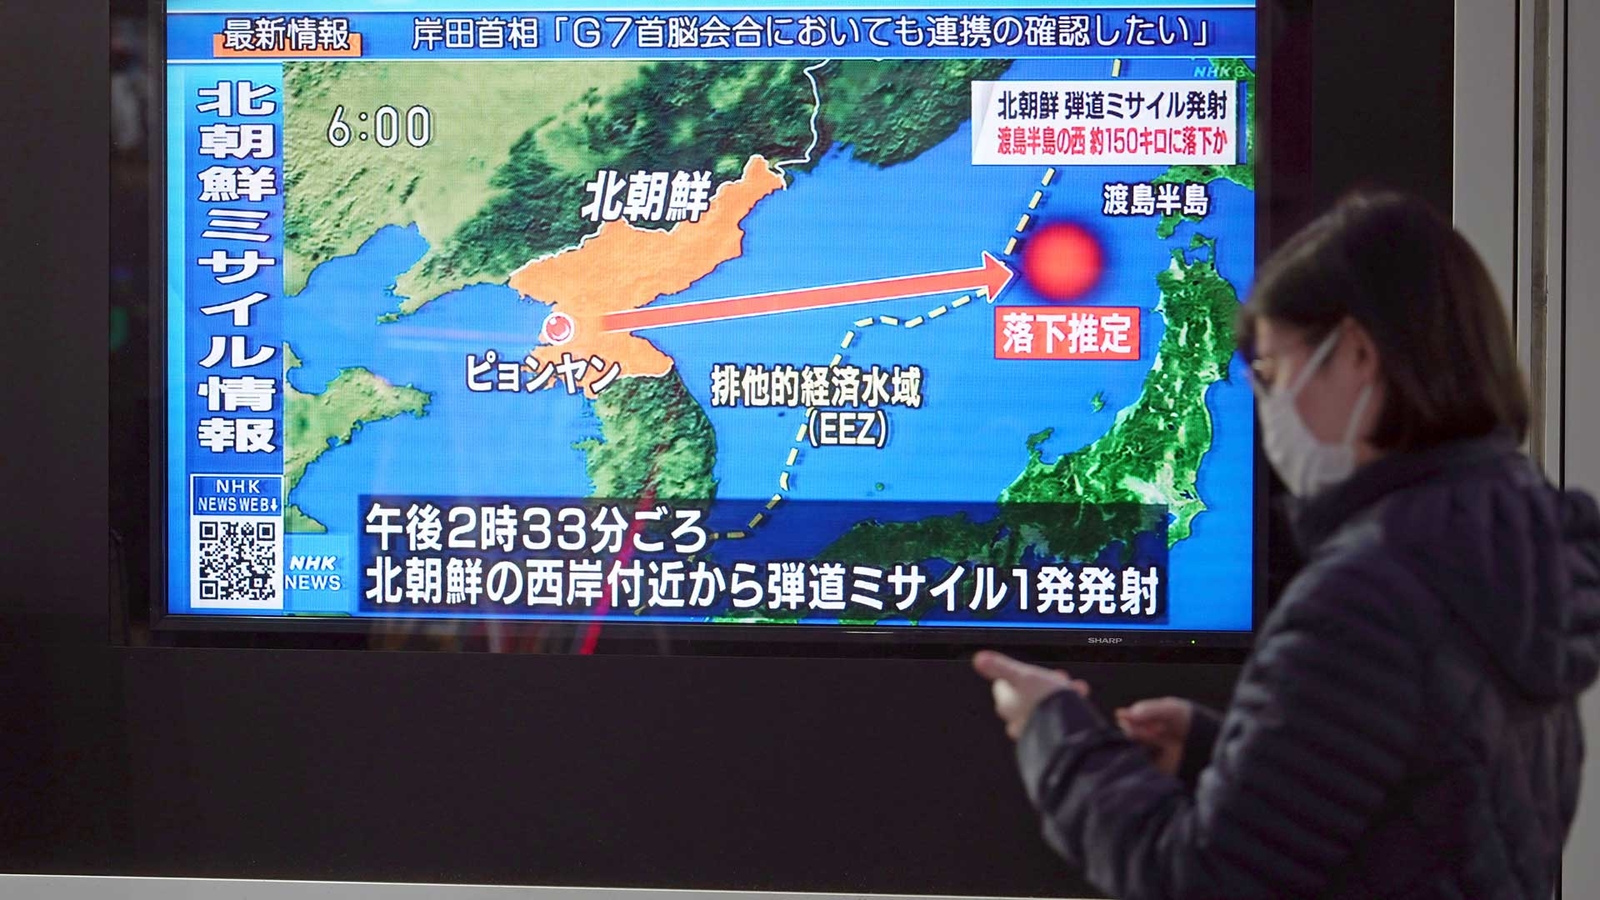 Dialing up pressure, North Korea tests long-range missile